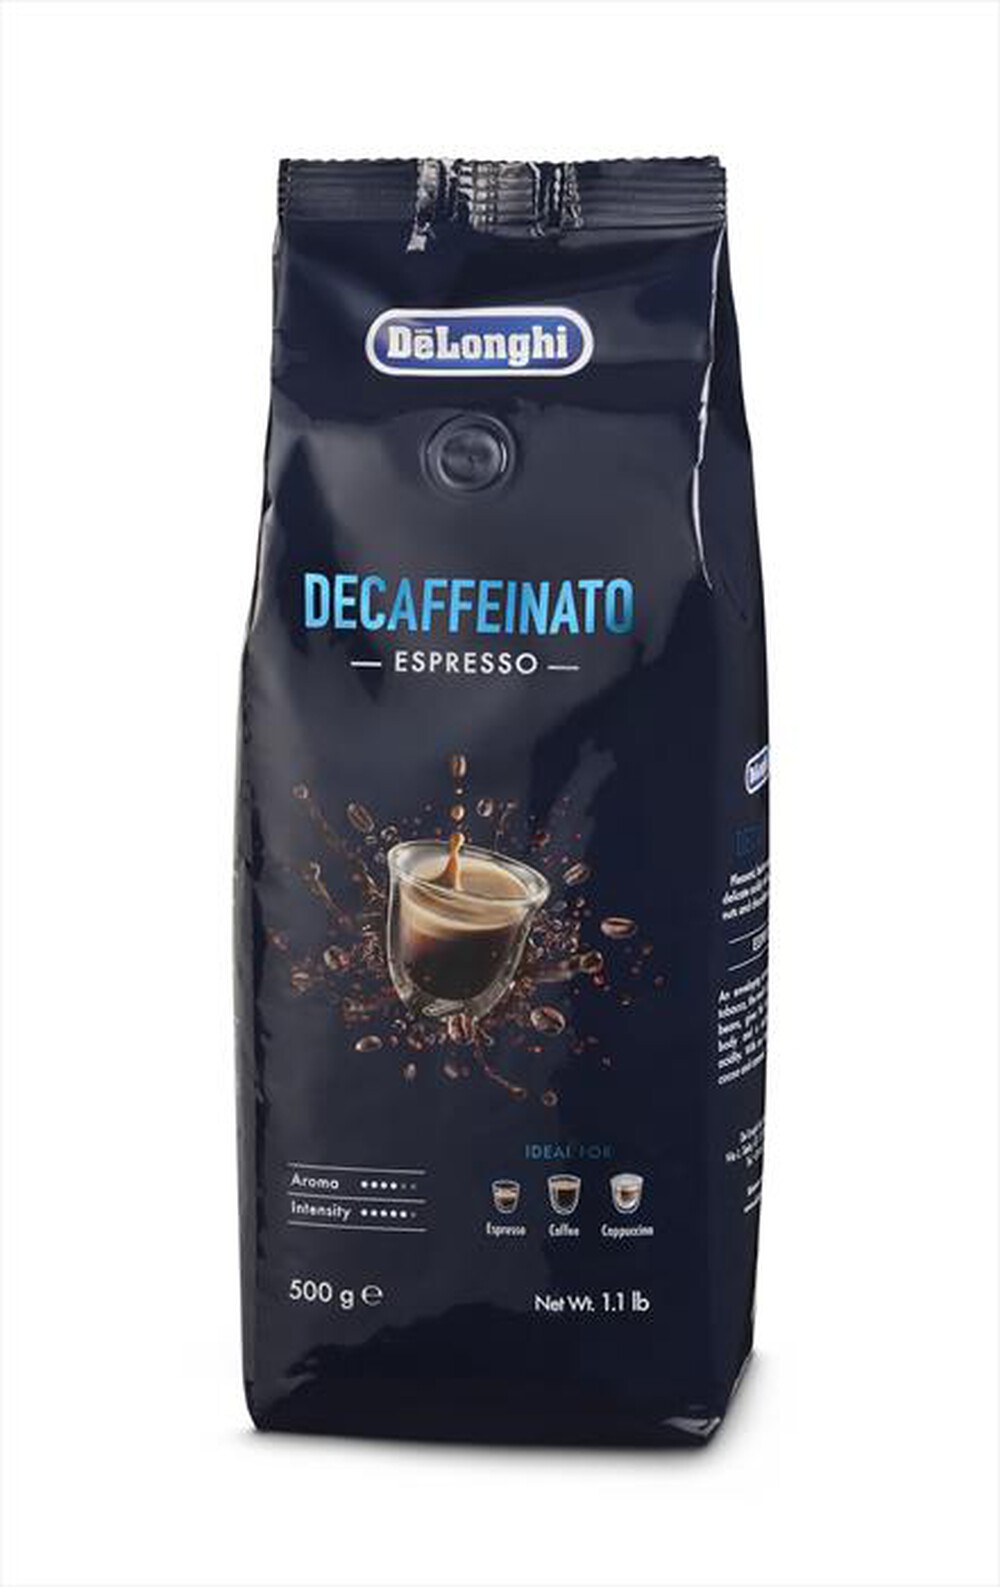 "DE LONGHI - DLSC607 CAFFE' IN CHICCHI DECAFFEINATO 500"